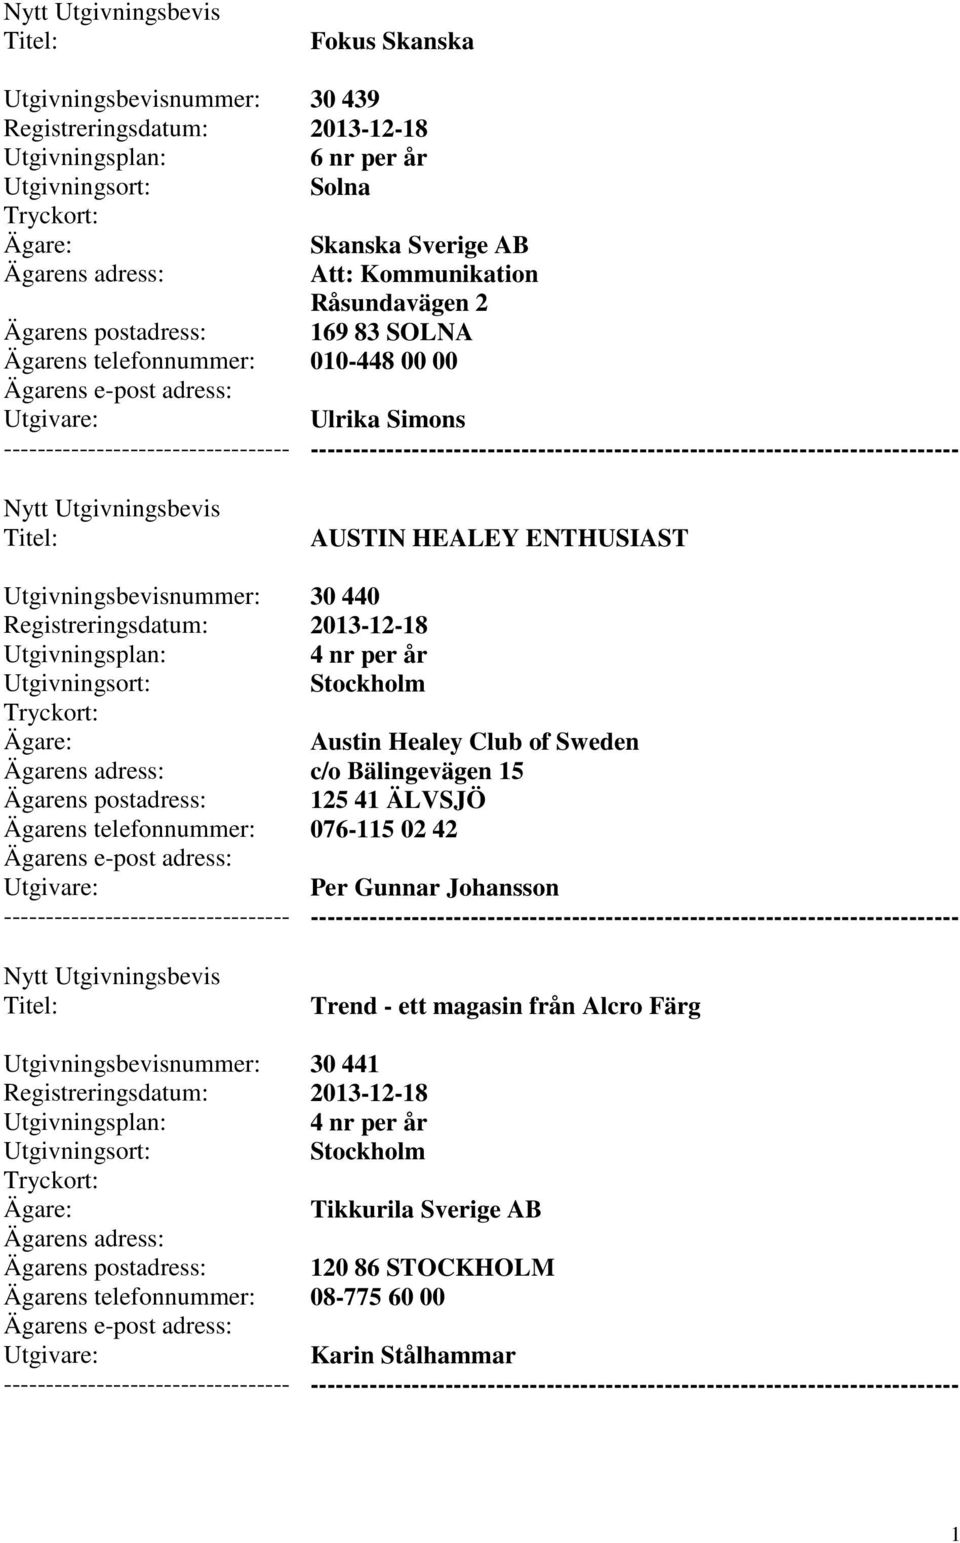 Sweden c/o Bälingevägen 15 125 41 ÄLVSJÖ 076-115 02 42 Per Gunnar Johansson Trend - ett